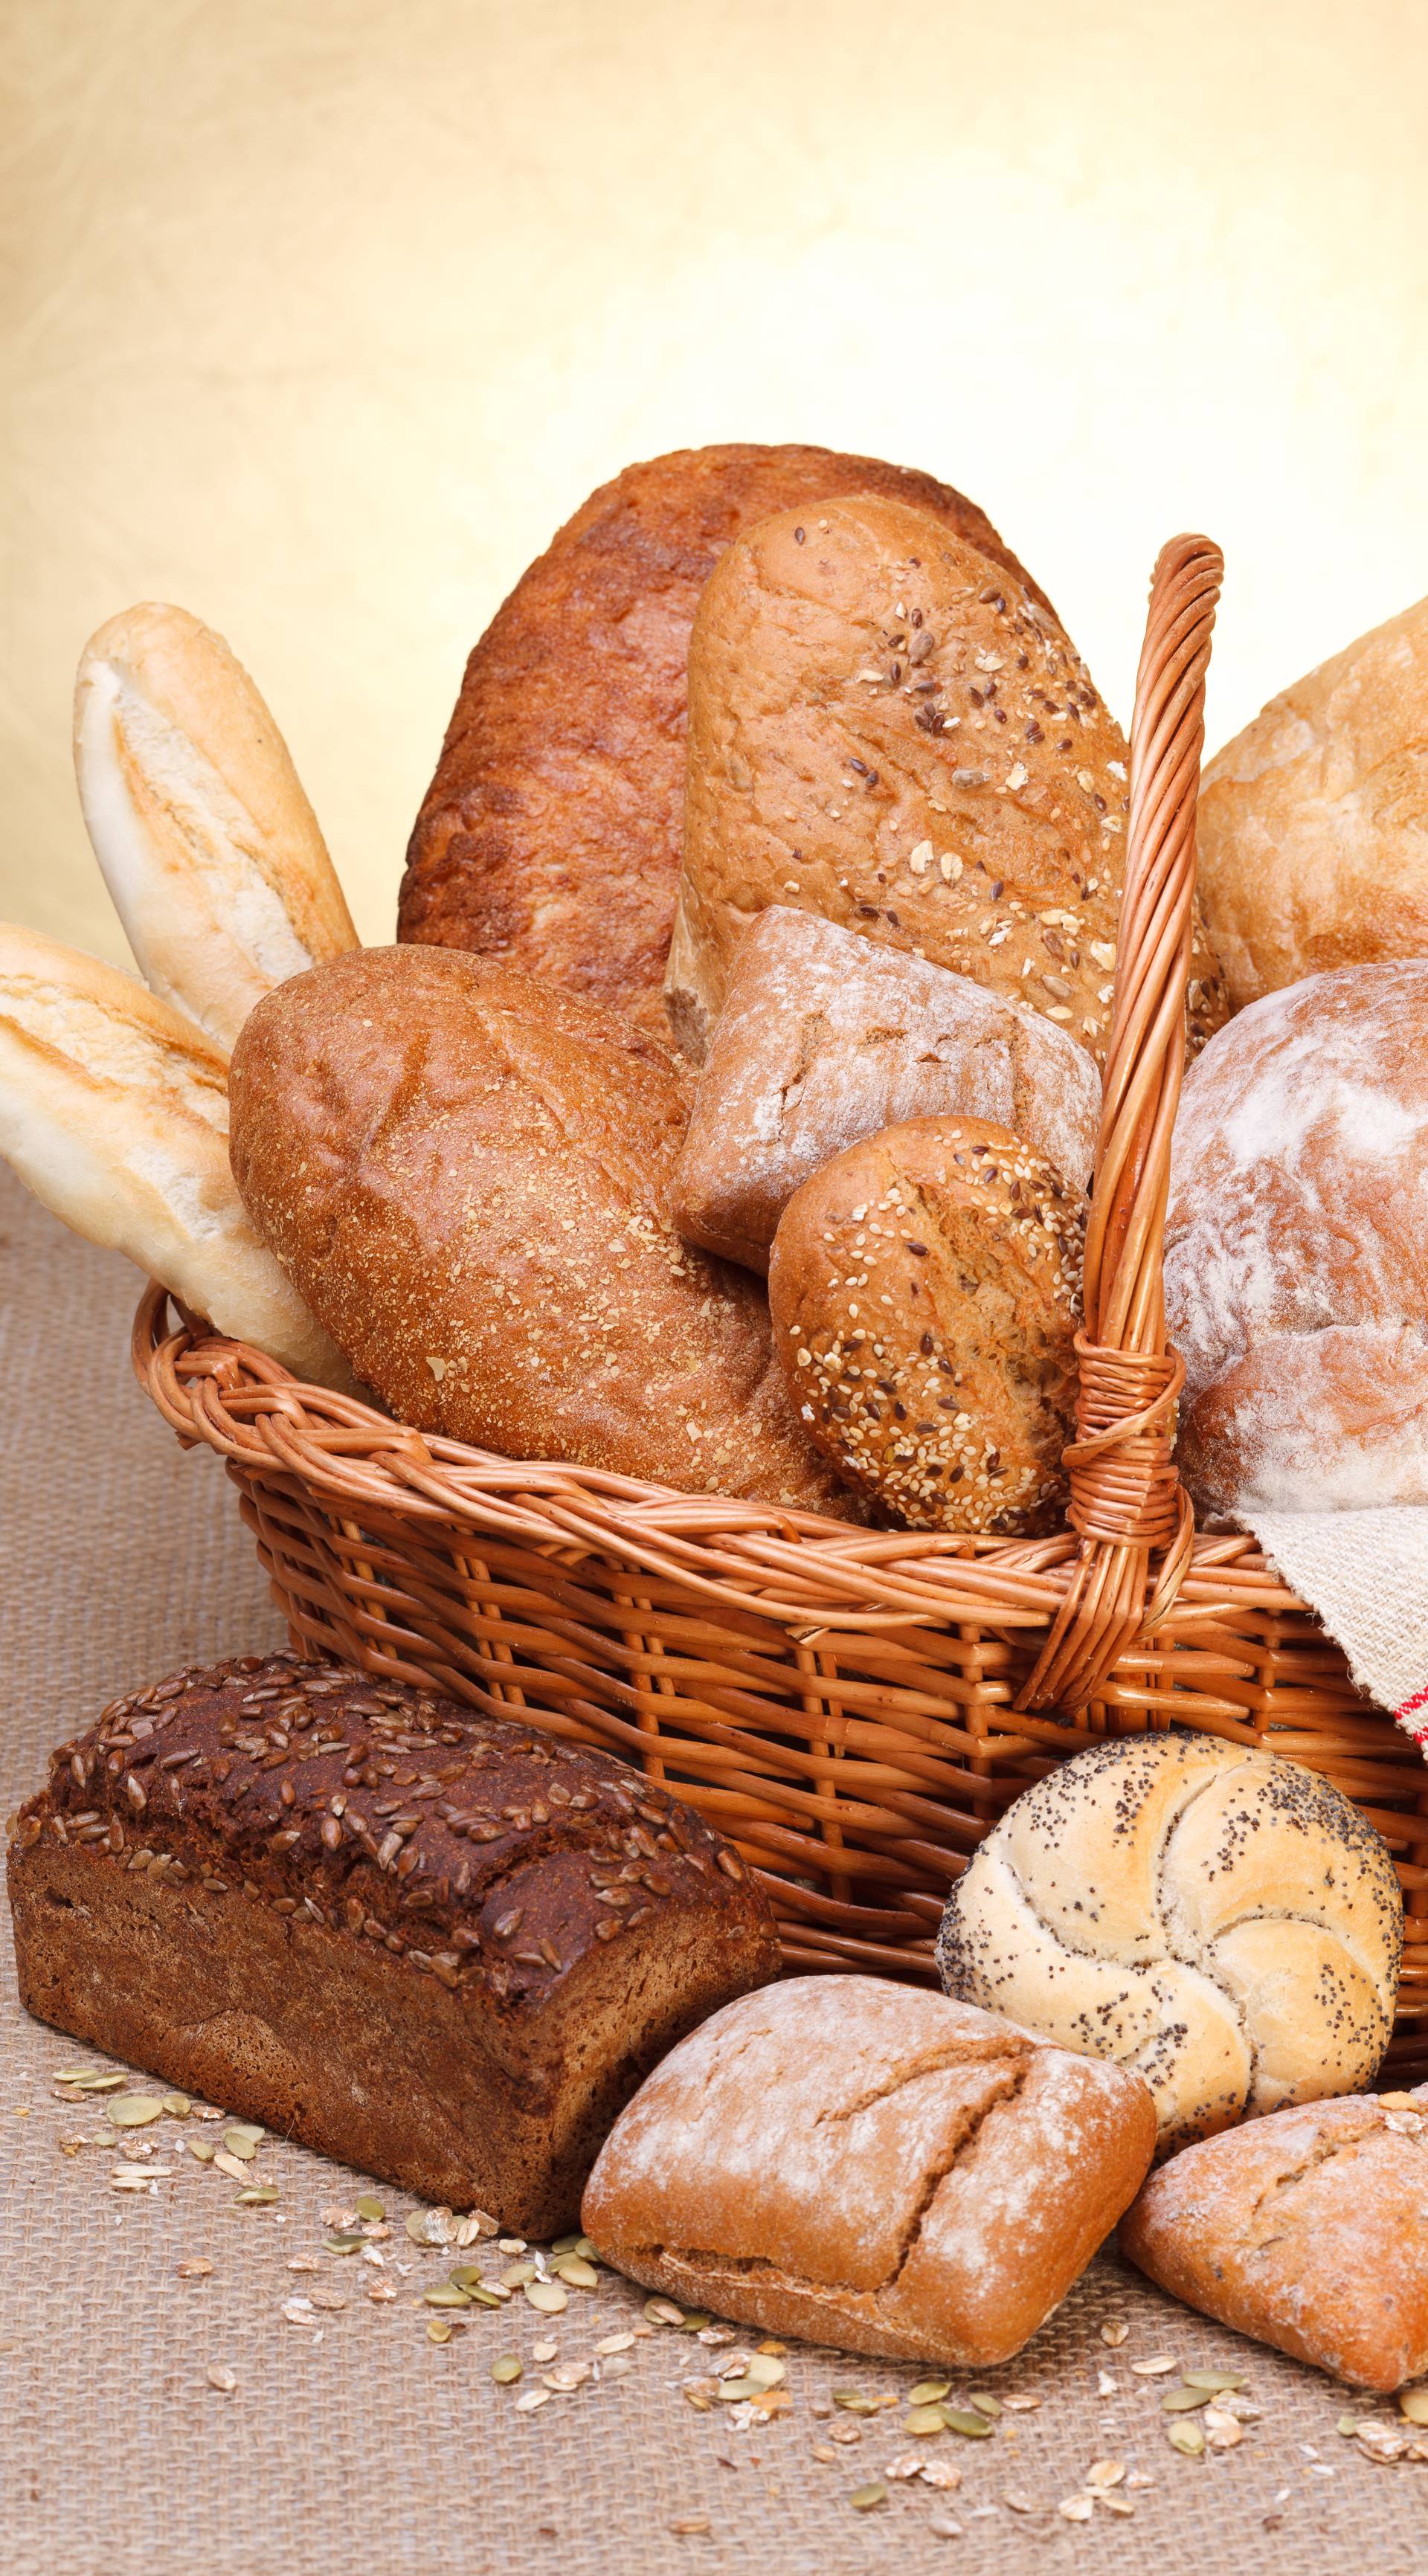 Jedemo uvozno: Kruh i peciva iz Poljske, Češke, Njemačke...